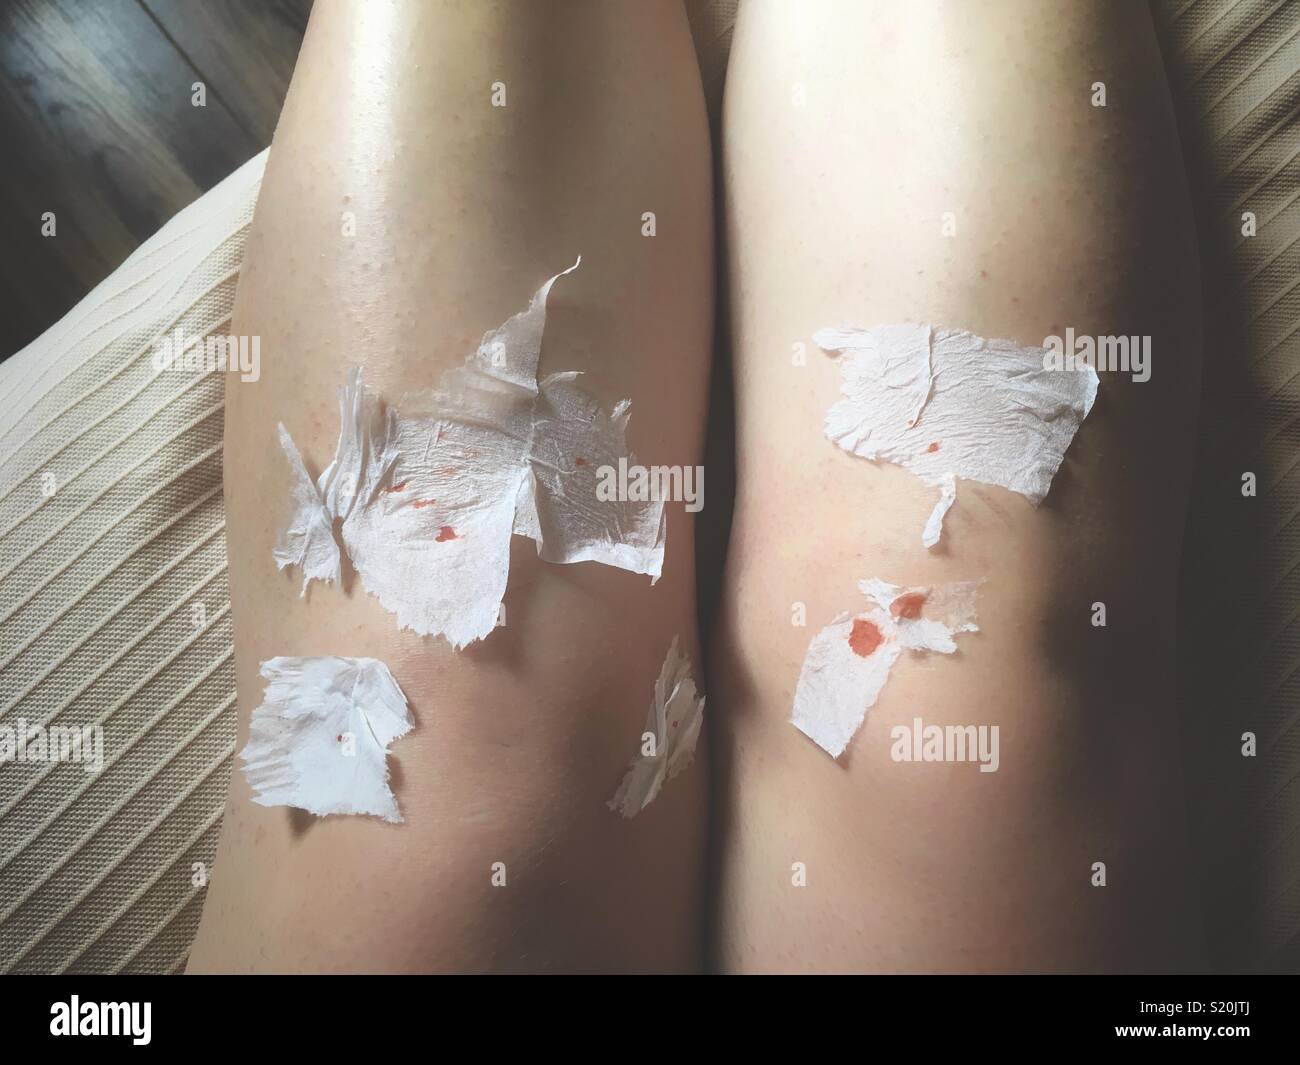 Sicht der Schuß eines weiblichen Beine nach der Rasur mit Papier von Patches auf ein Rasiermesser schneidet. Konzept - Schönheit braucht Opfer. Stockfoto